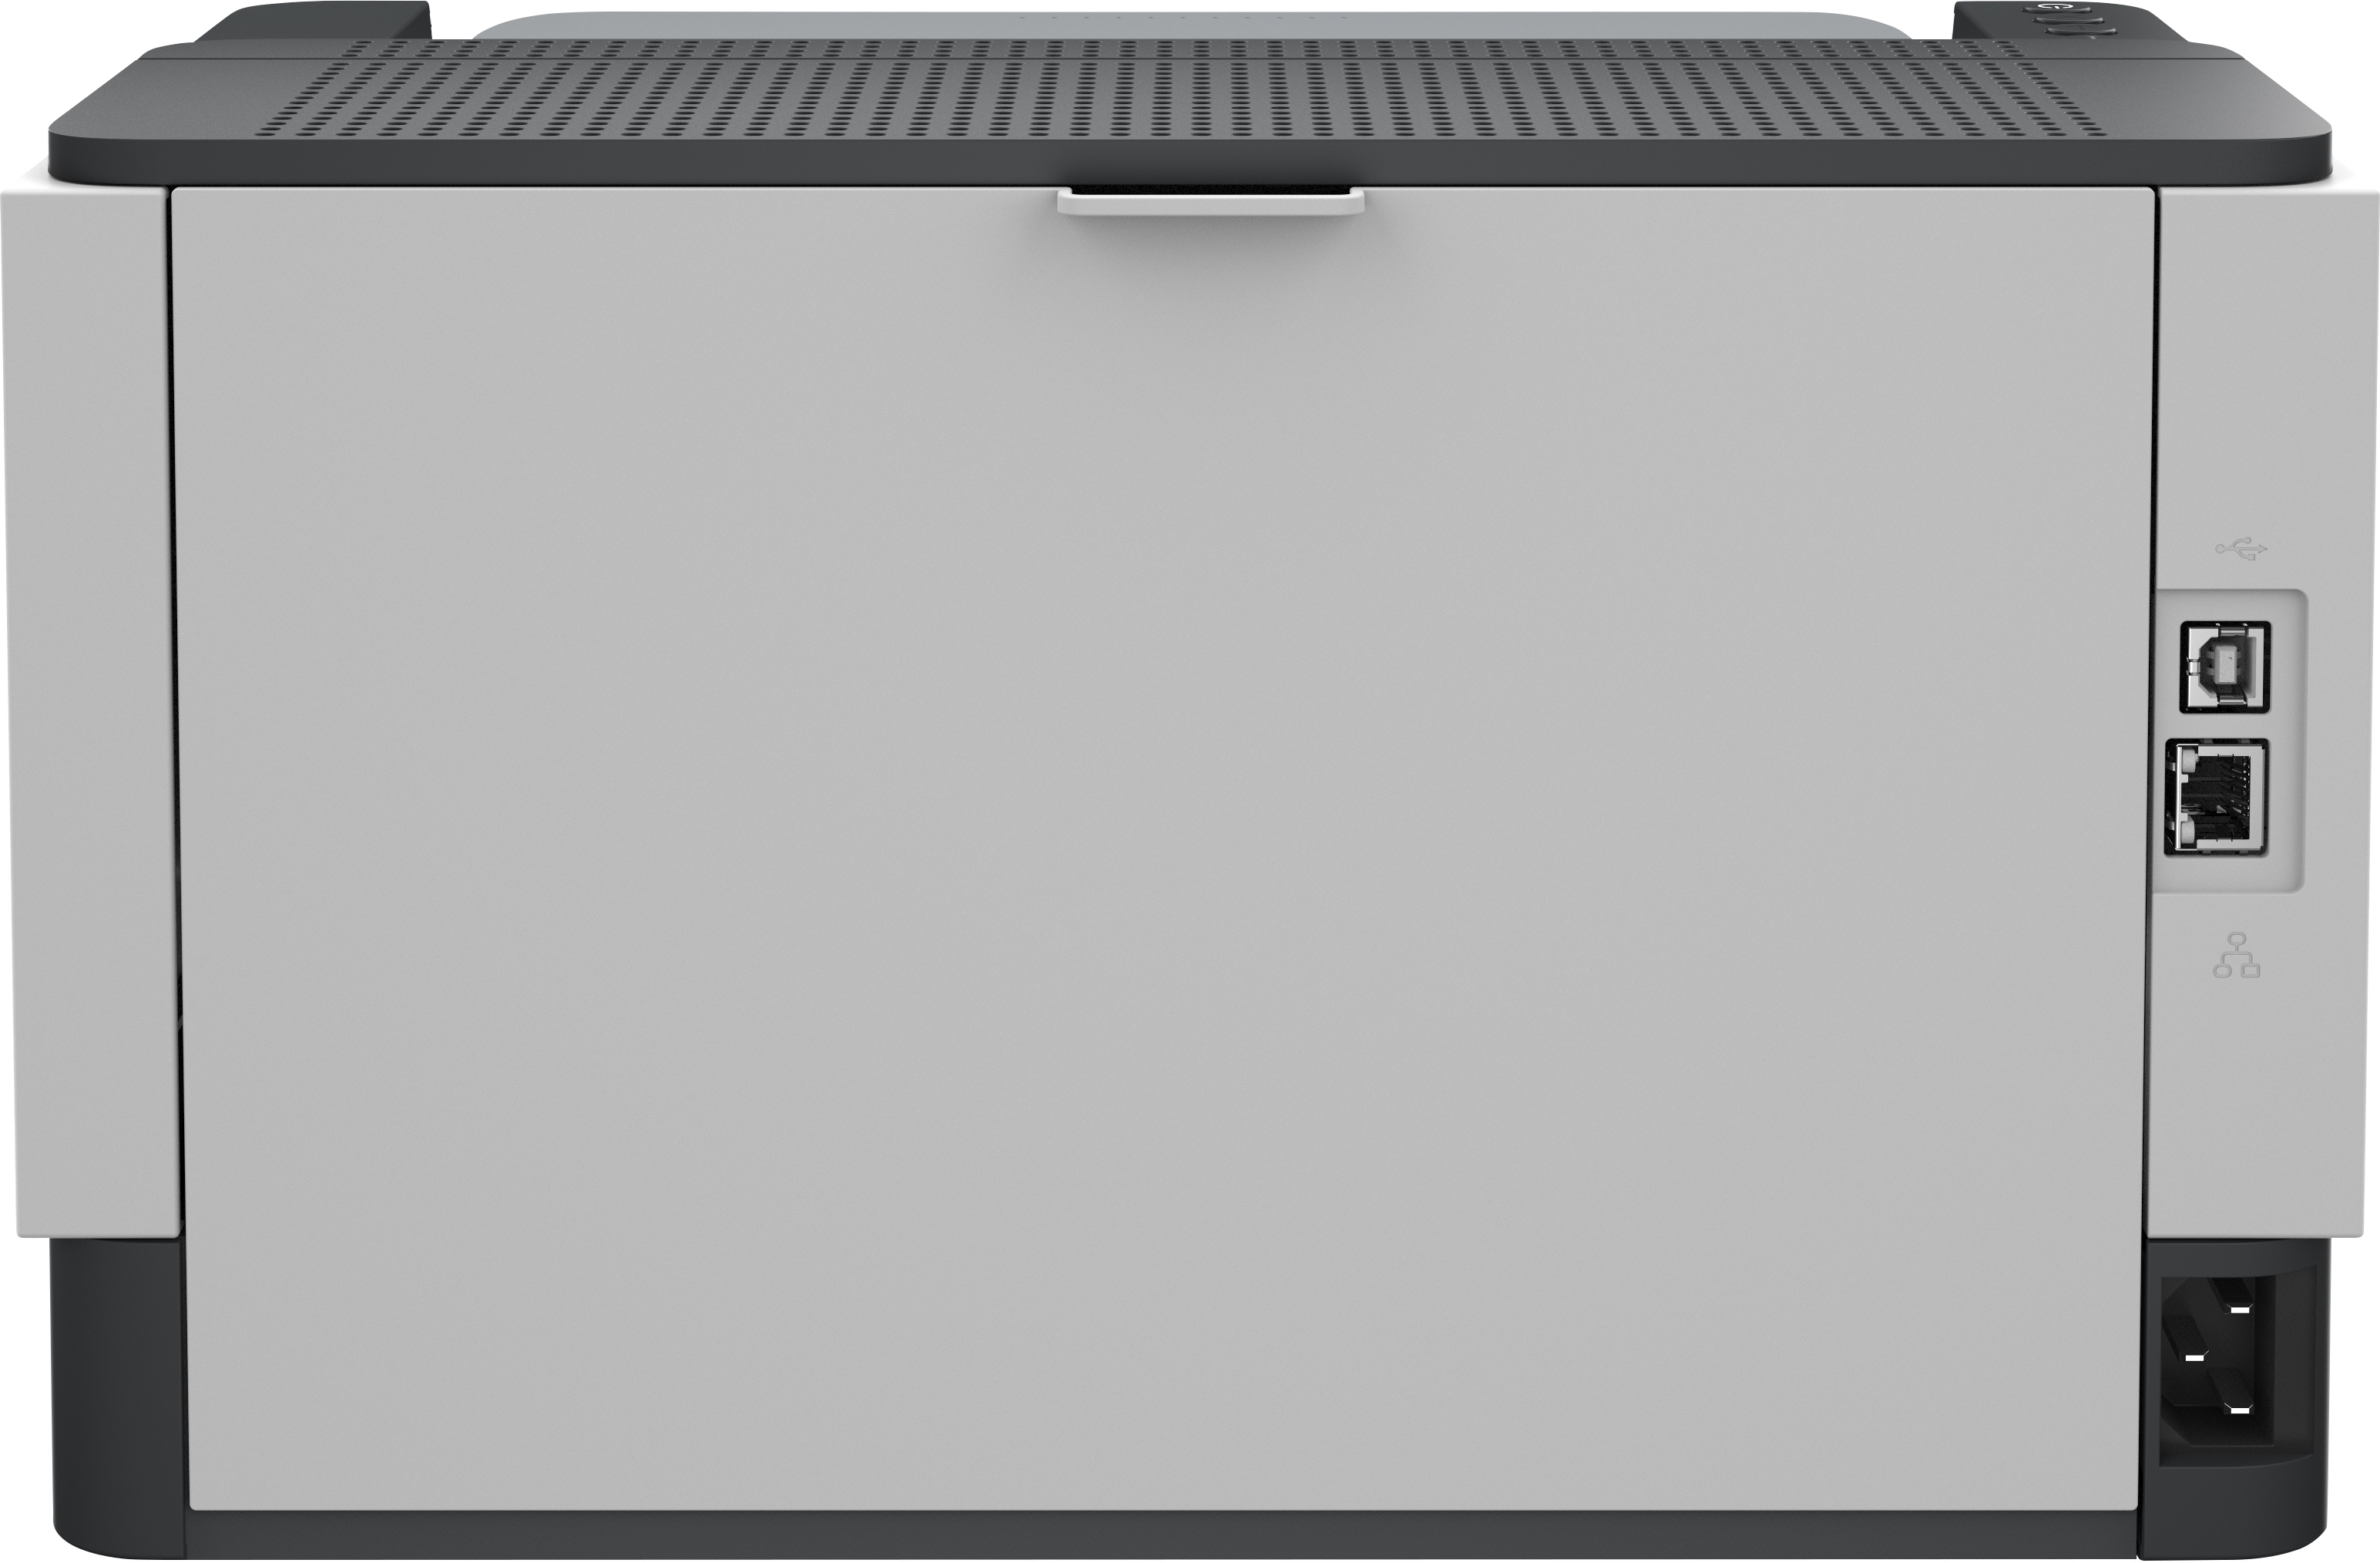 HP Stampante LaserJet Tank 2504dw, Bianco e nero, per Aziendale, Stampa, Stampa fronte/retro; dimensioni compatte; risparmio energetico; Wi-Fi dual band [2R7F4A#B19]